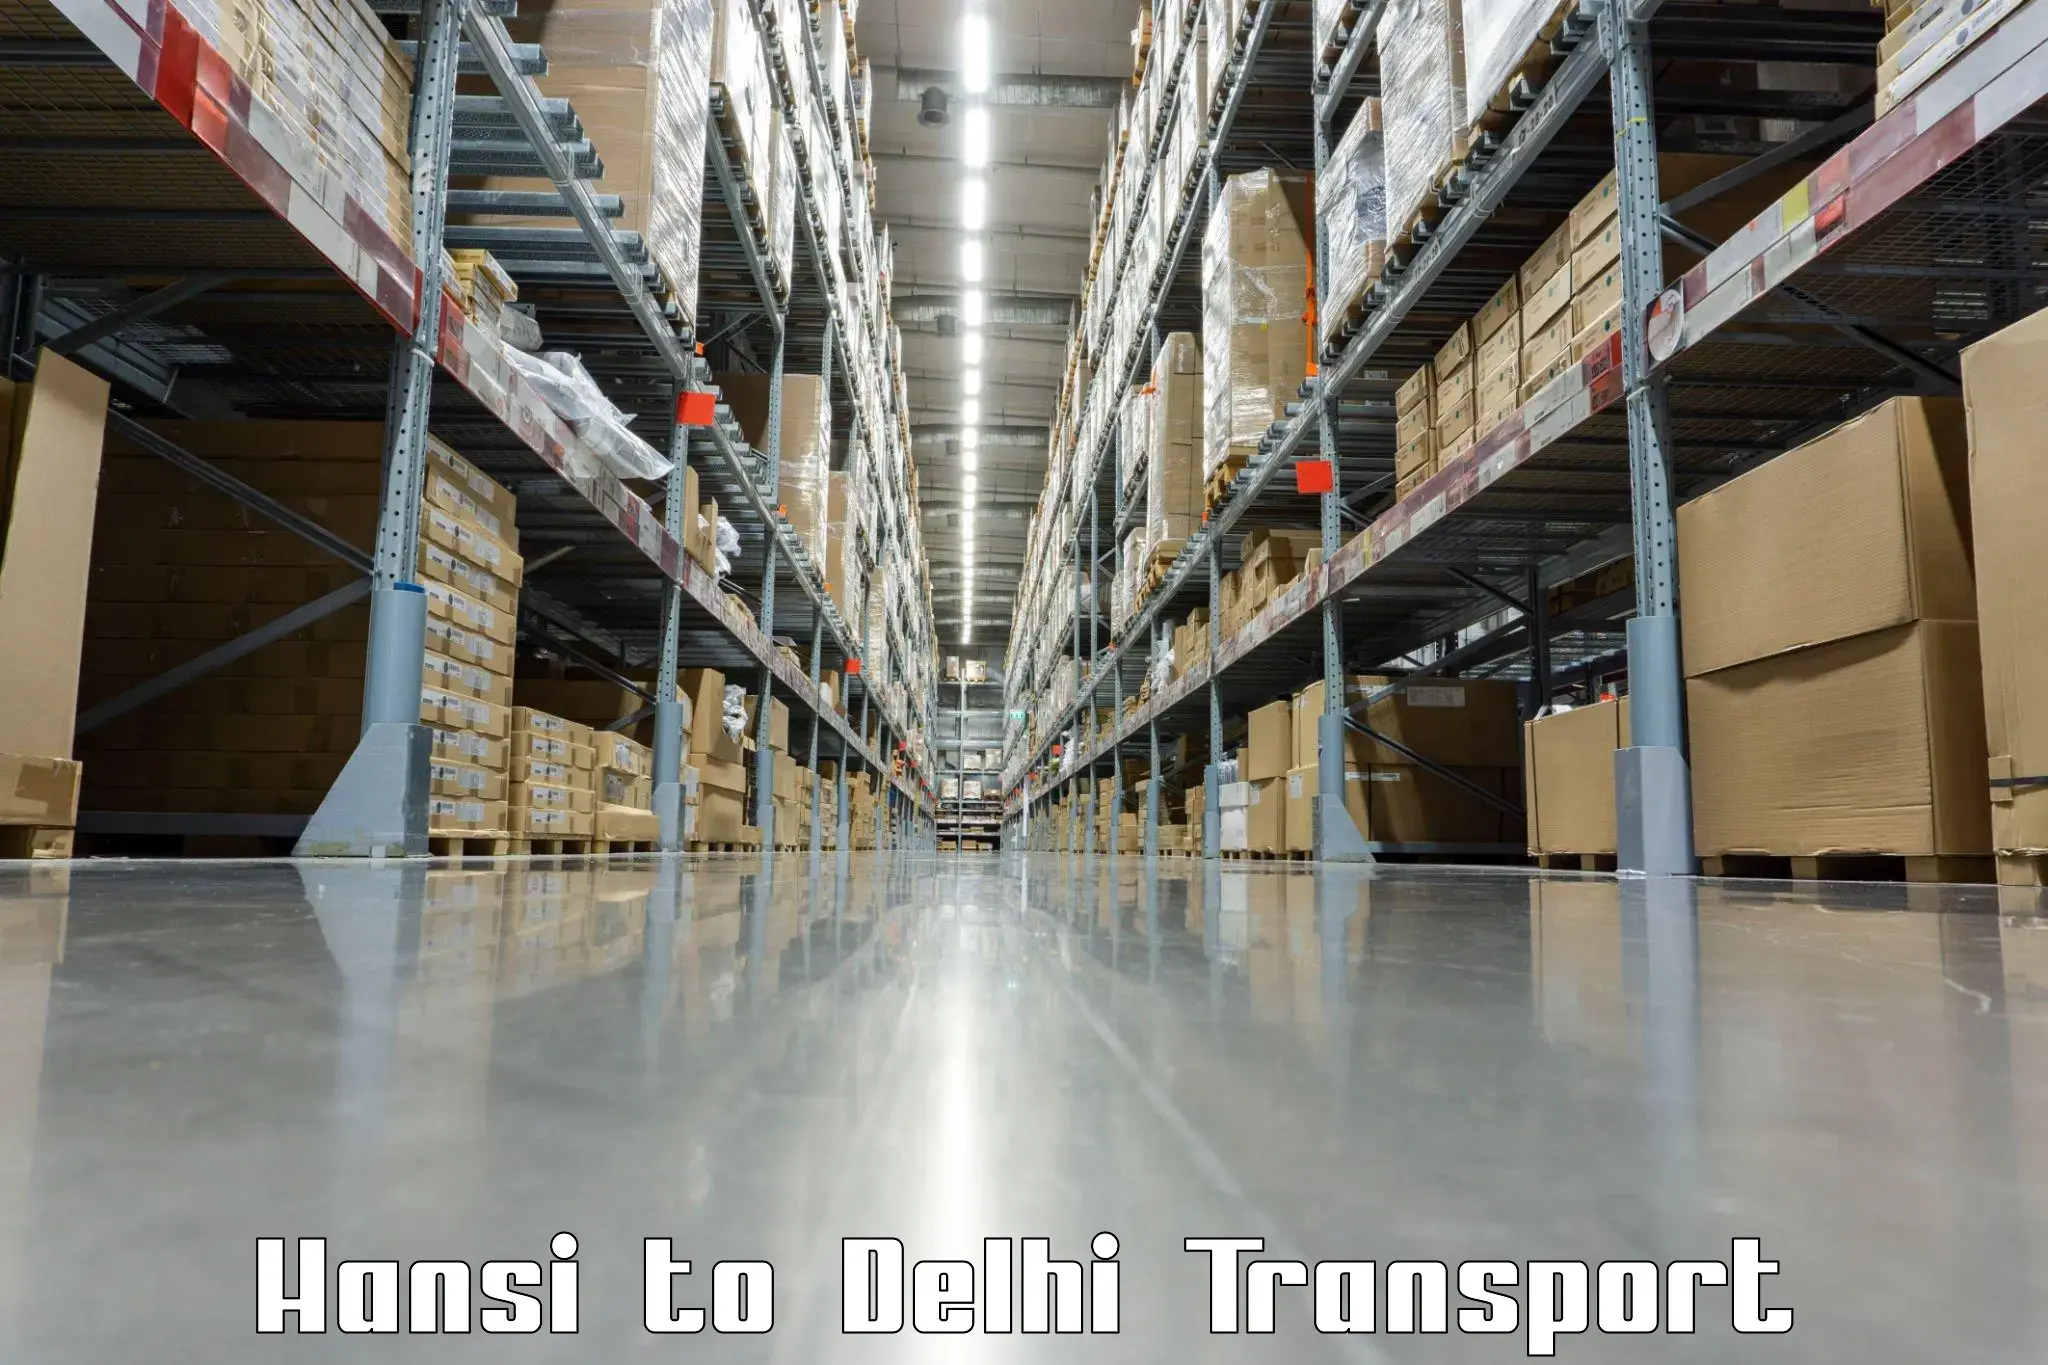 Door to door transport services Hansi to East Delhi